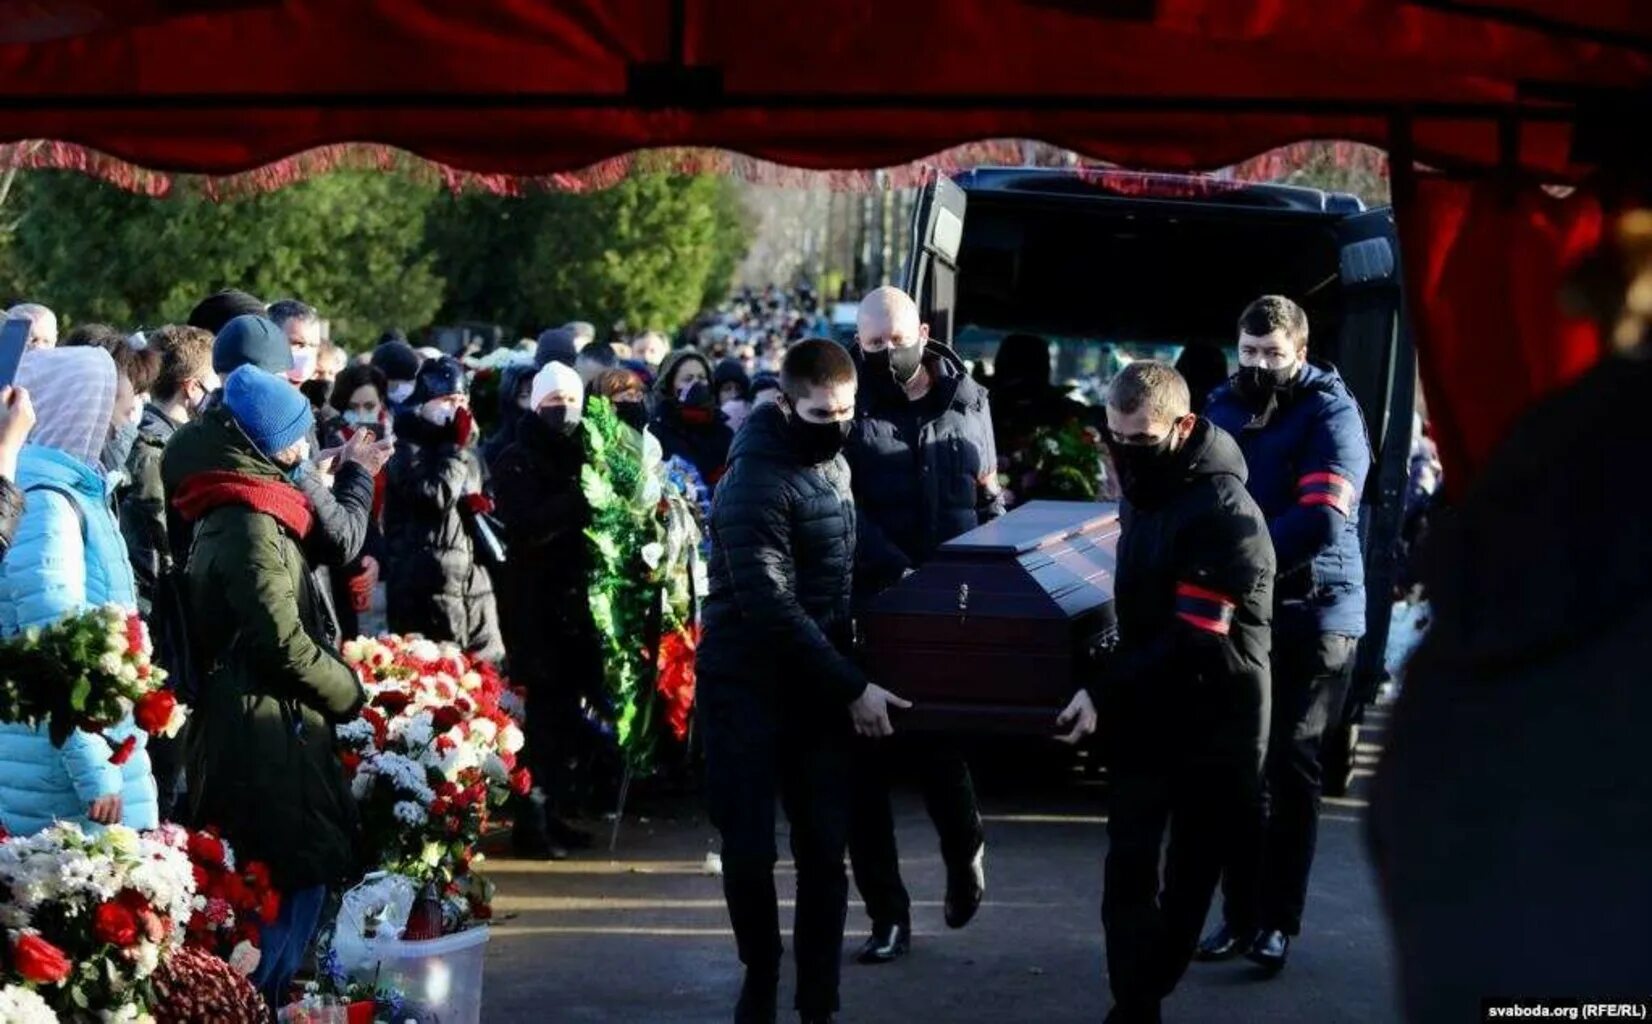 Похороны депутата Бондаренко. Похороны последний путь. Полное видео похорон